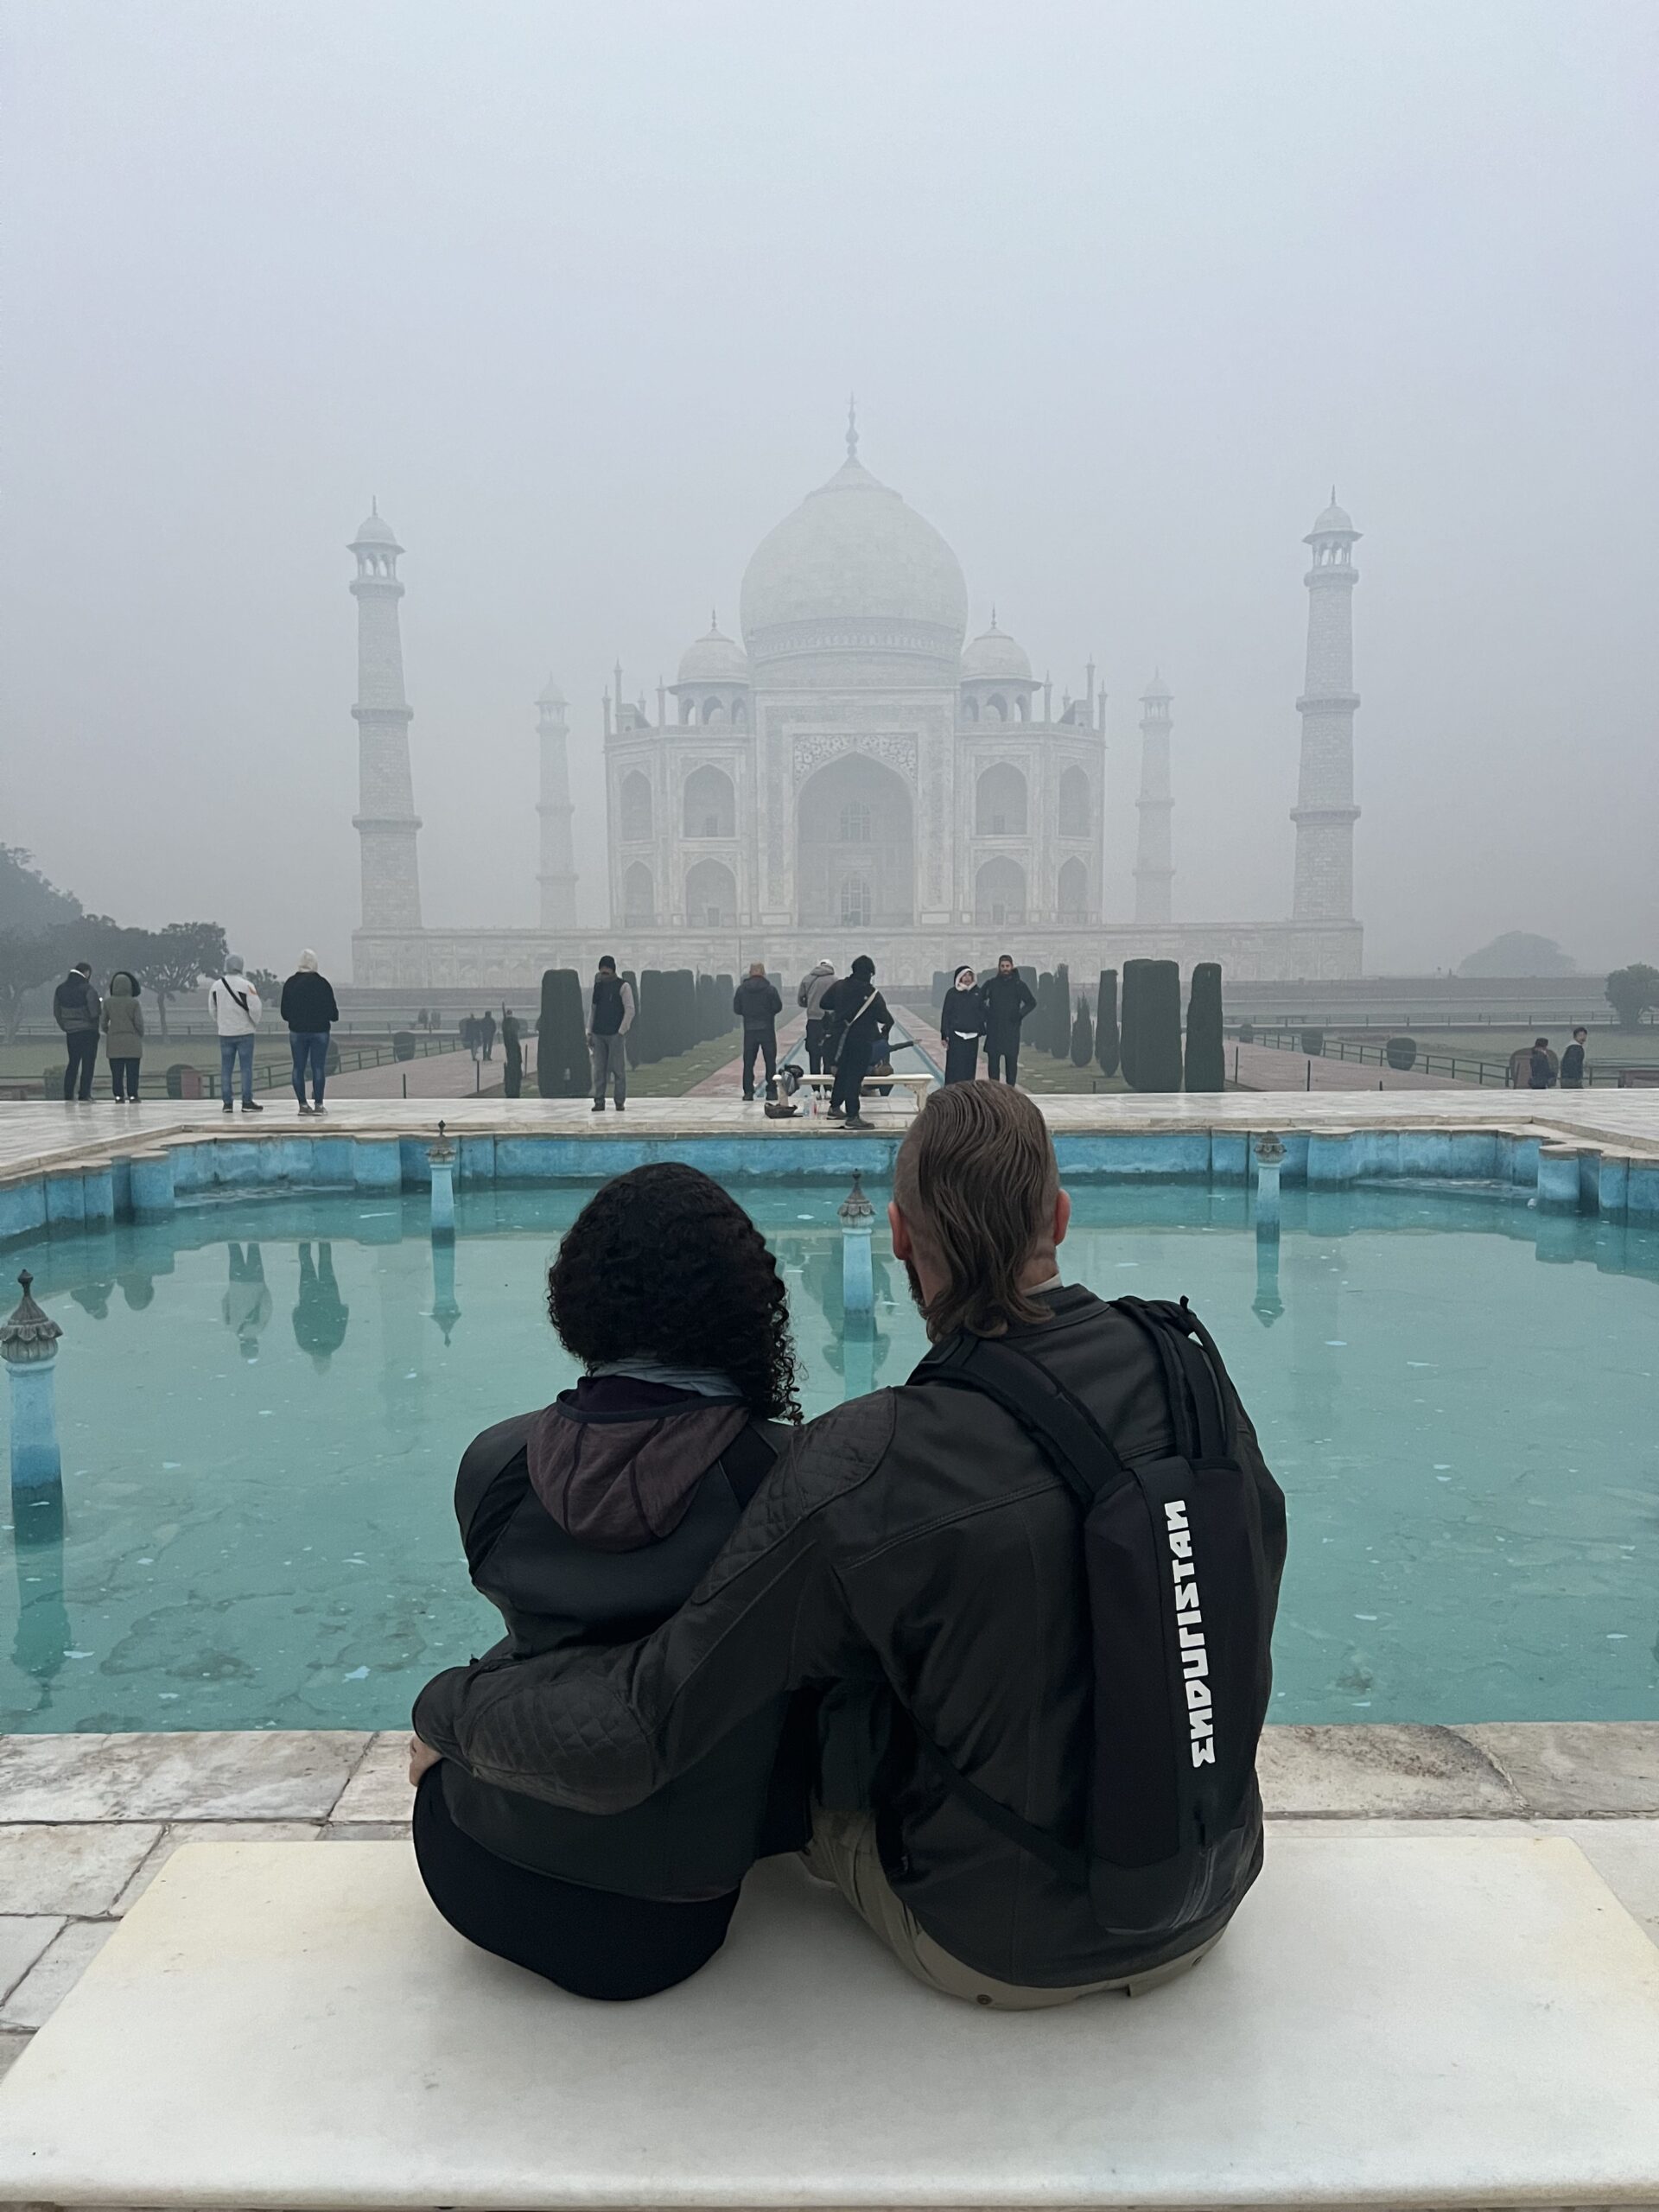 Watching the Taj in fog